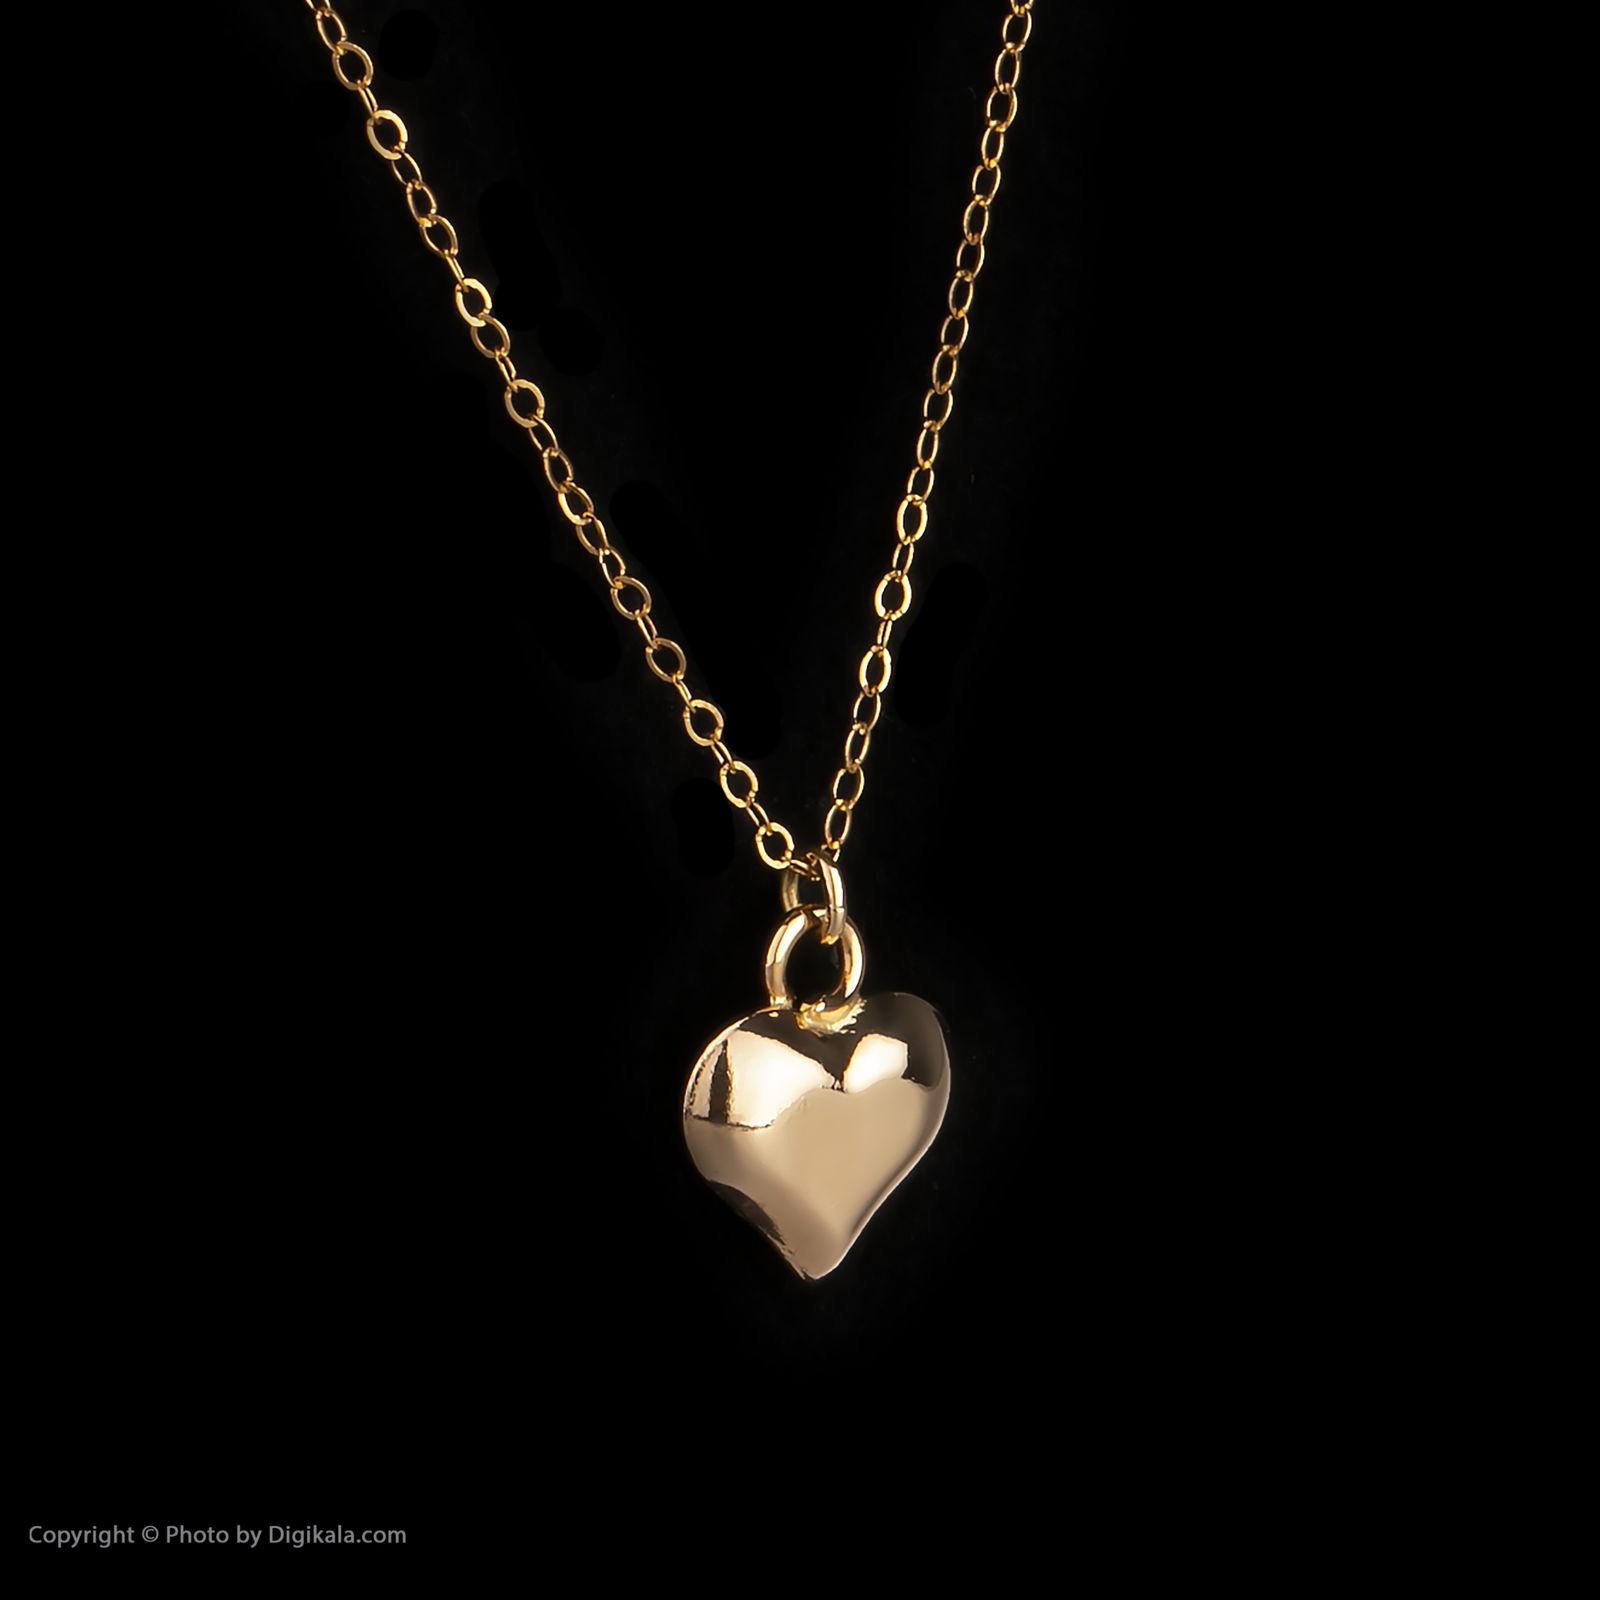 گردنبند طلا 18 عیار زنانه مایا ماهک مدل MM1105 طرح قلب 3 بعدی -  - 3